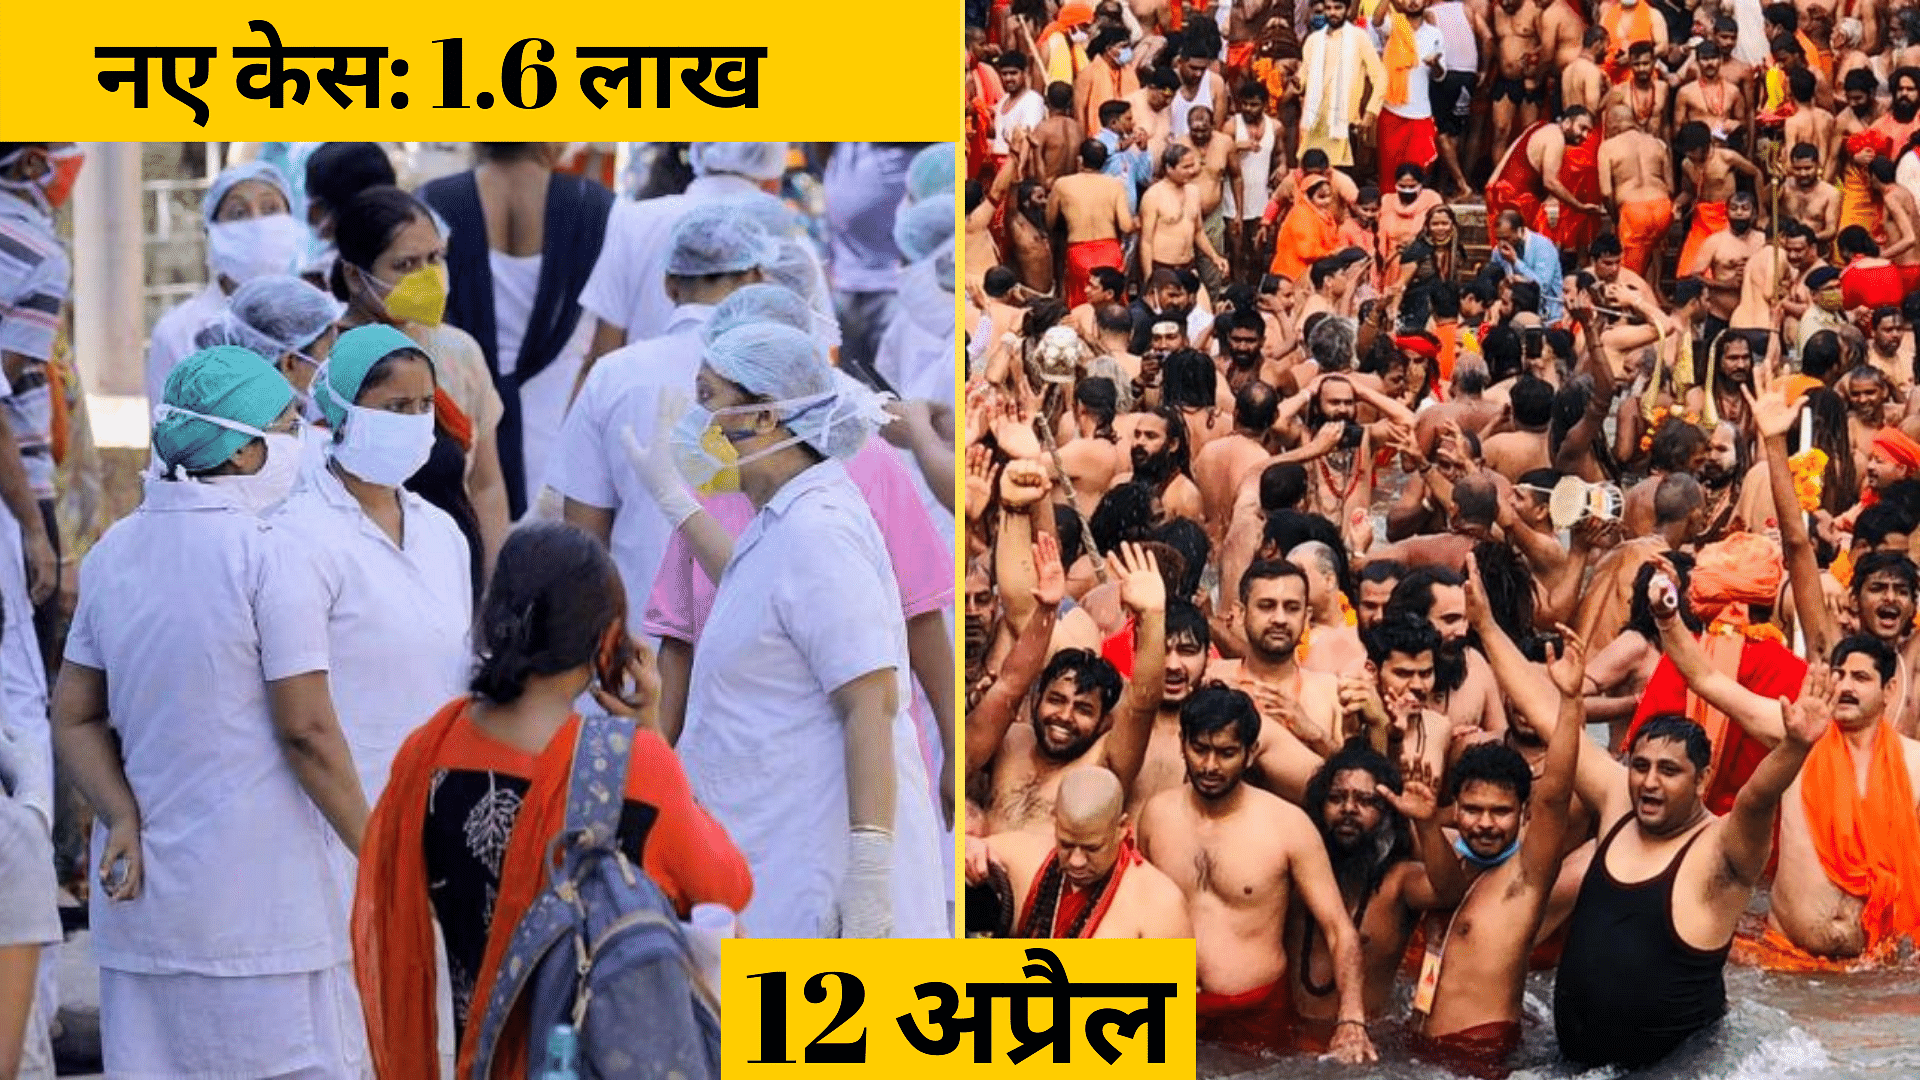 कुंभ में 12 अप्रैल के ‘शाही स्नान’ में दिखी 30 लाख श्रद्धालुओं से ज्यादा की भीड़